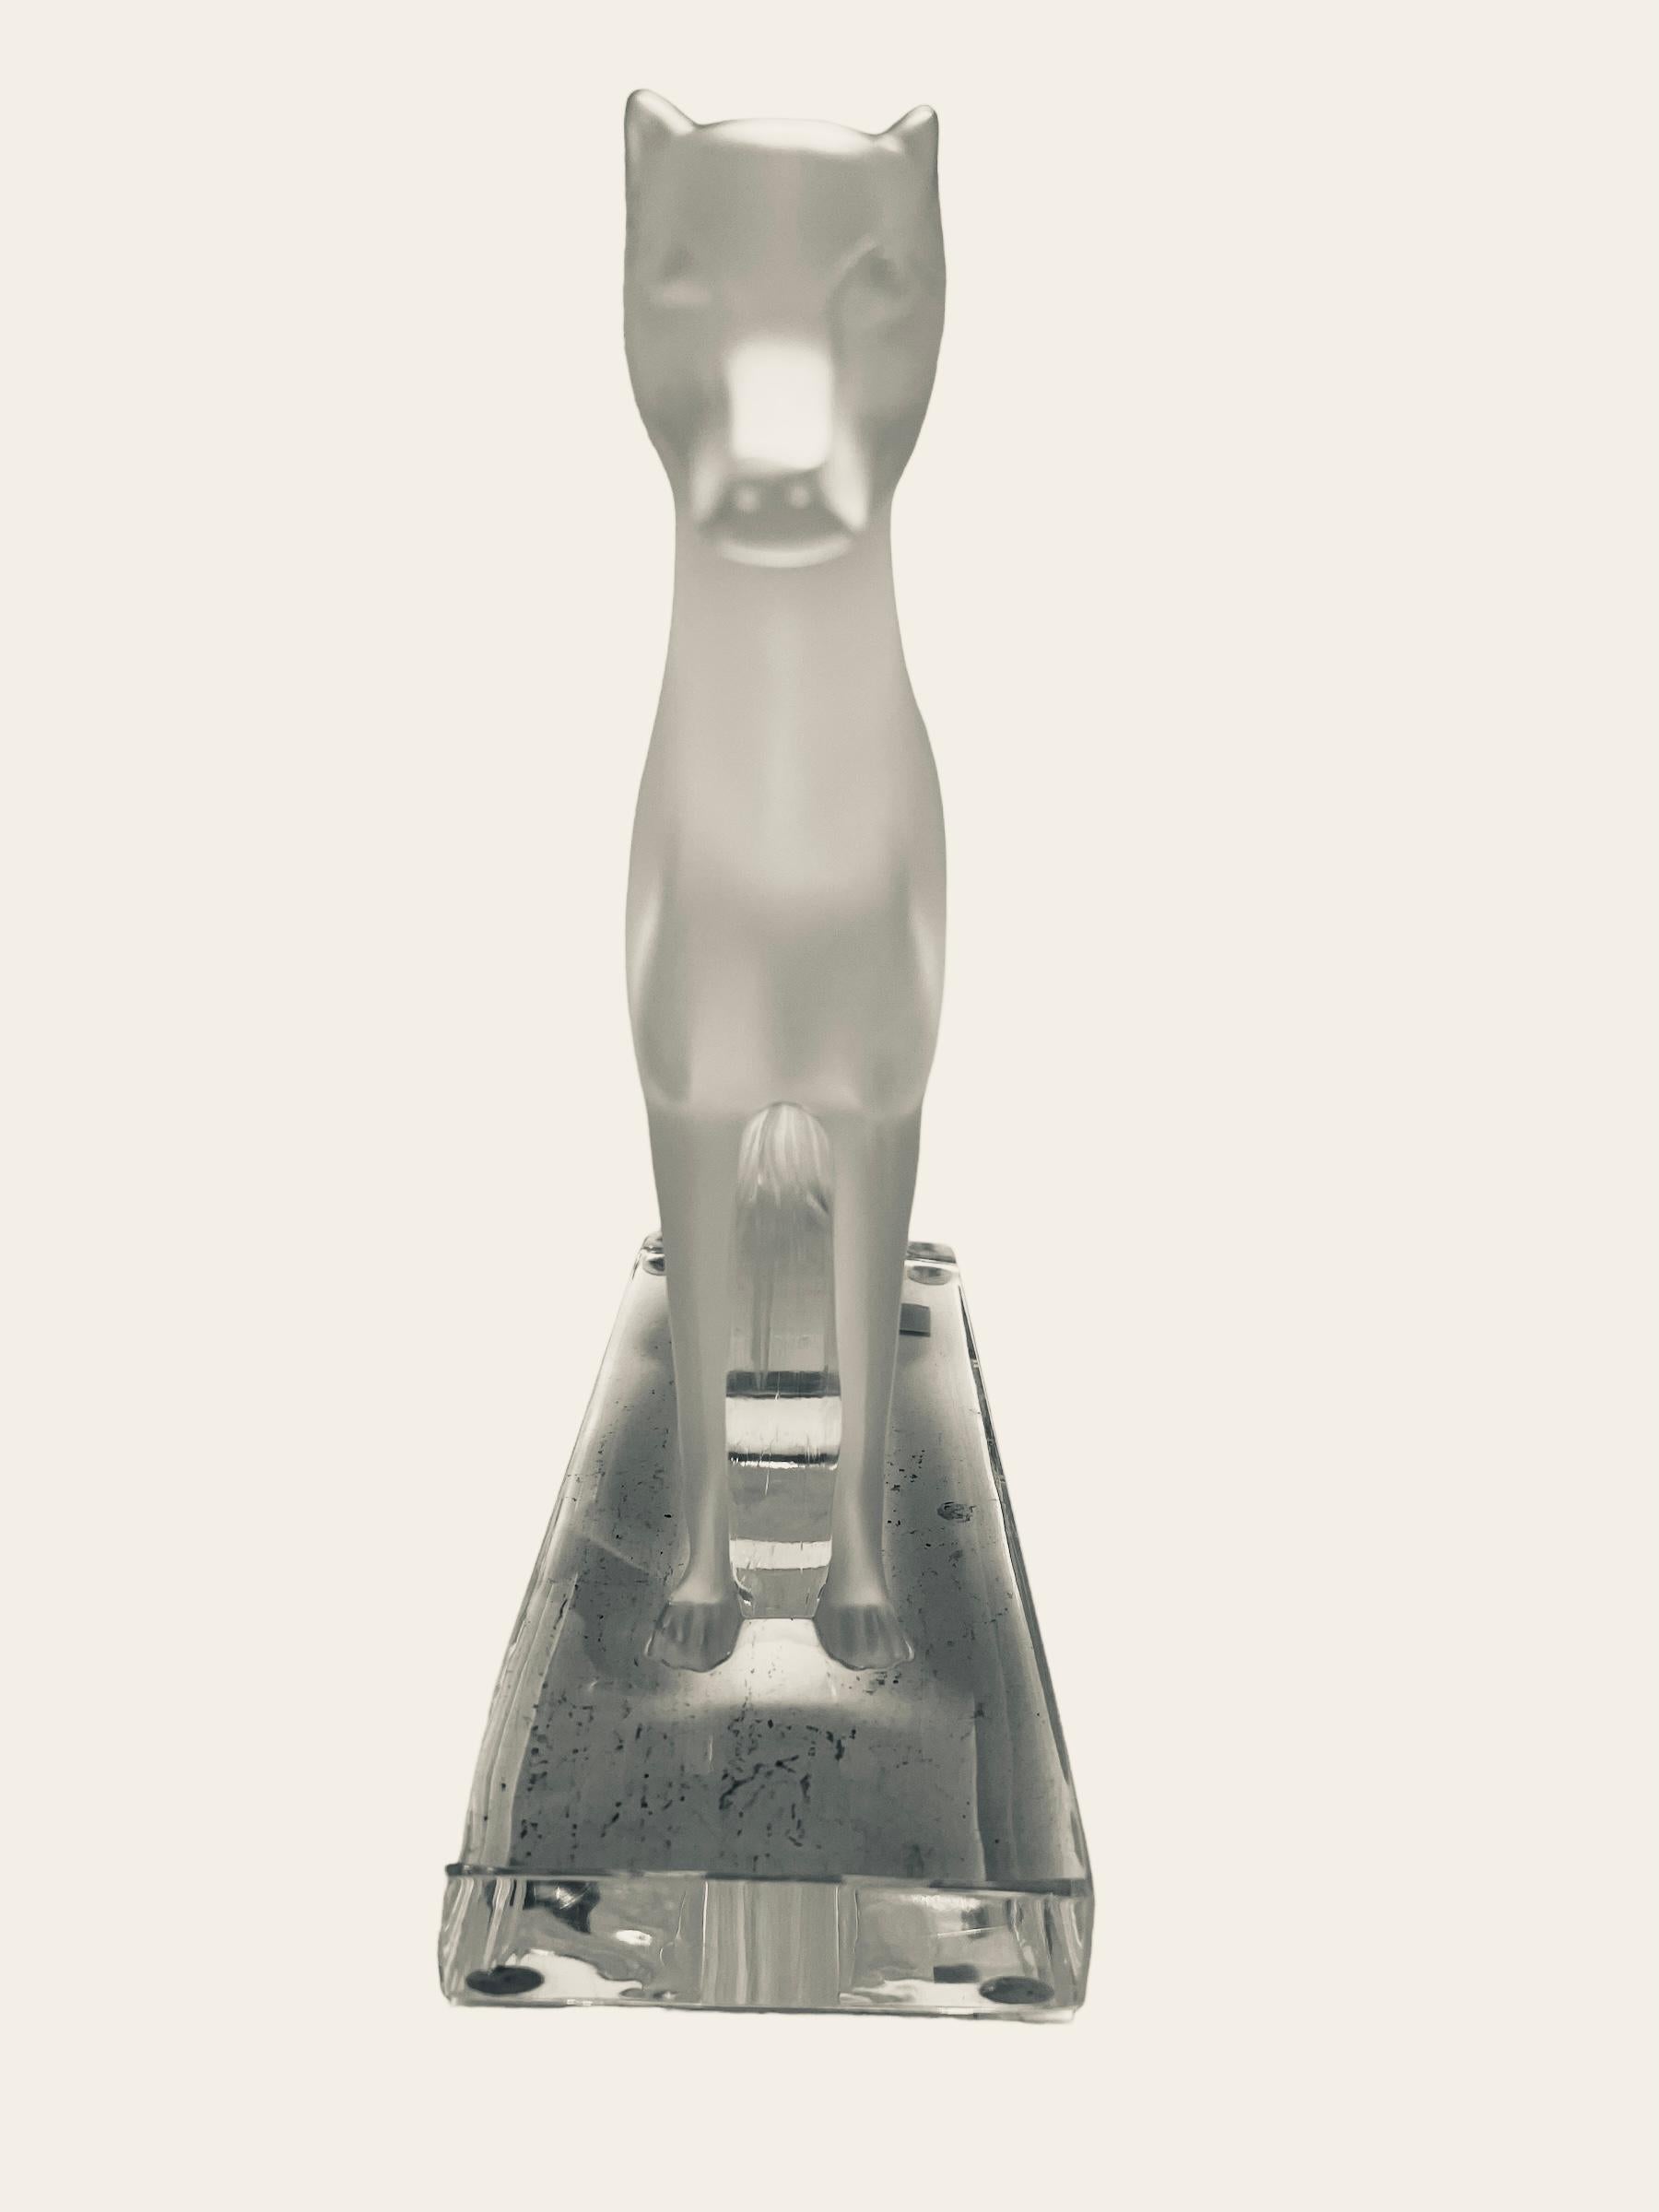 Il s'agit d'une sculpture /figurine Lalique en cristal clair et givré 